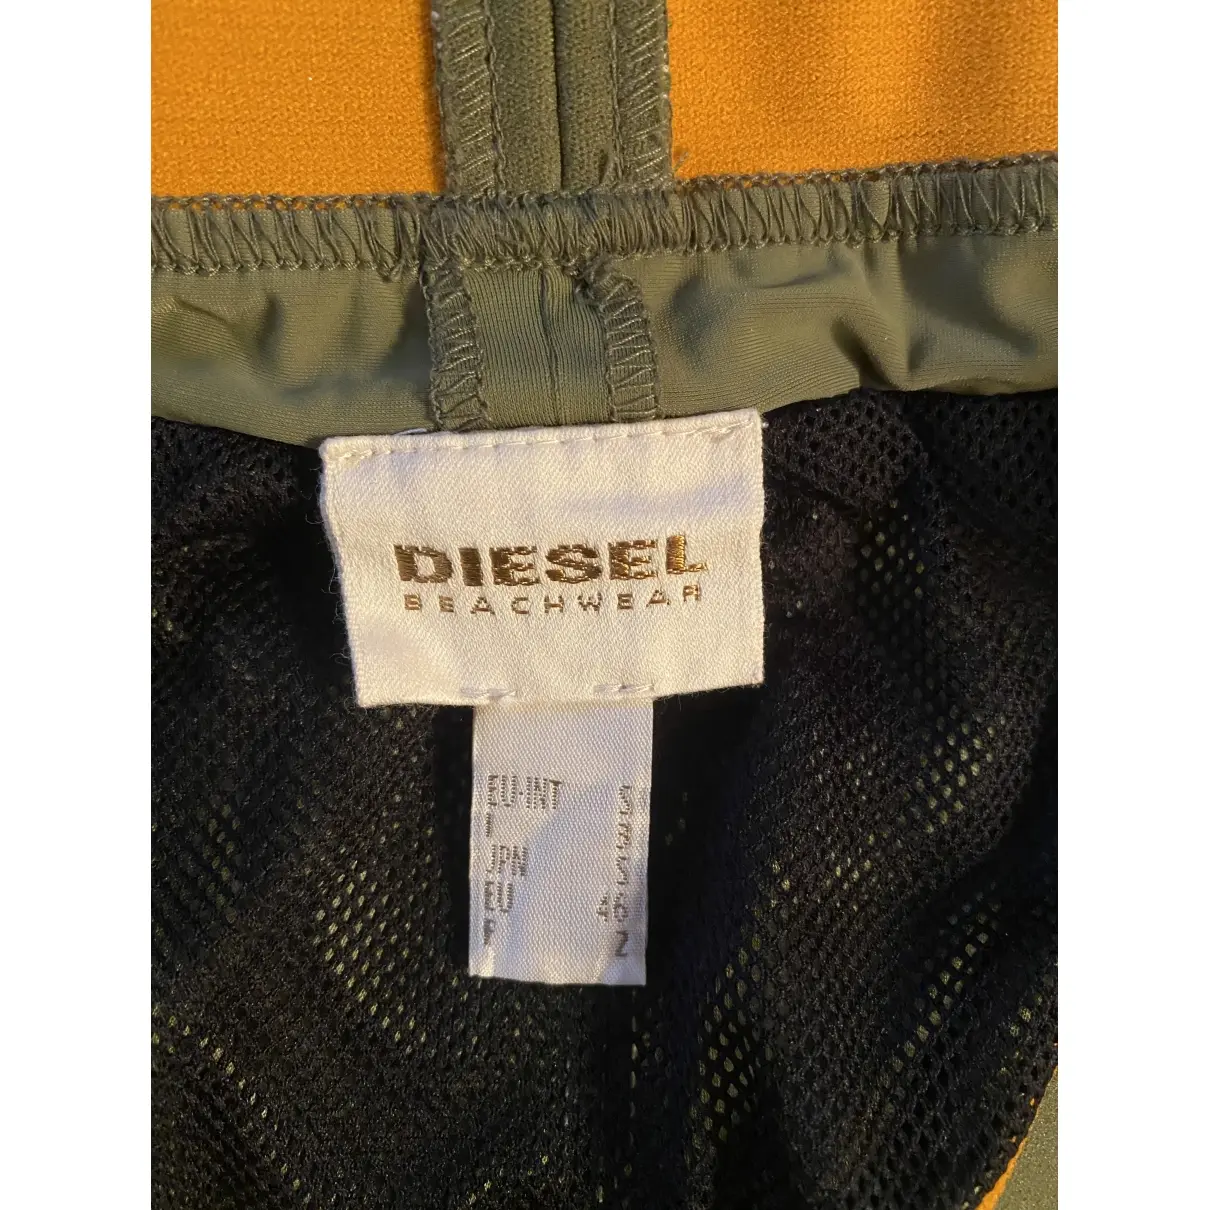 Buy Diesel Swimwear online